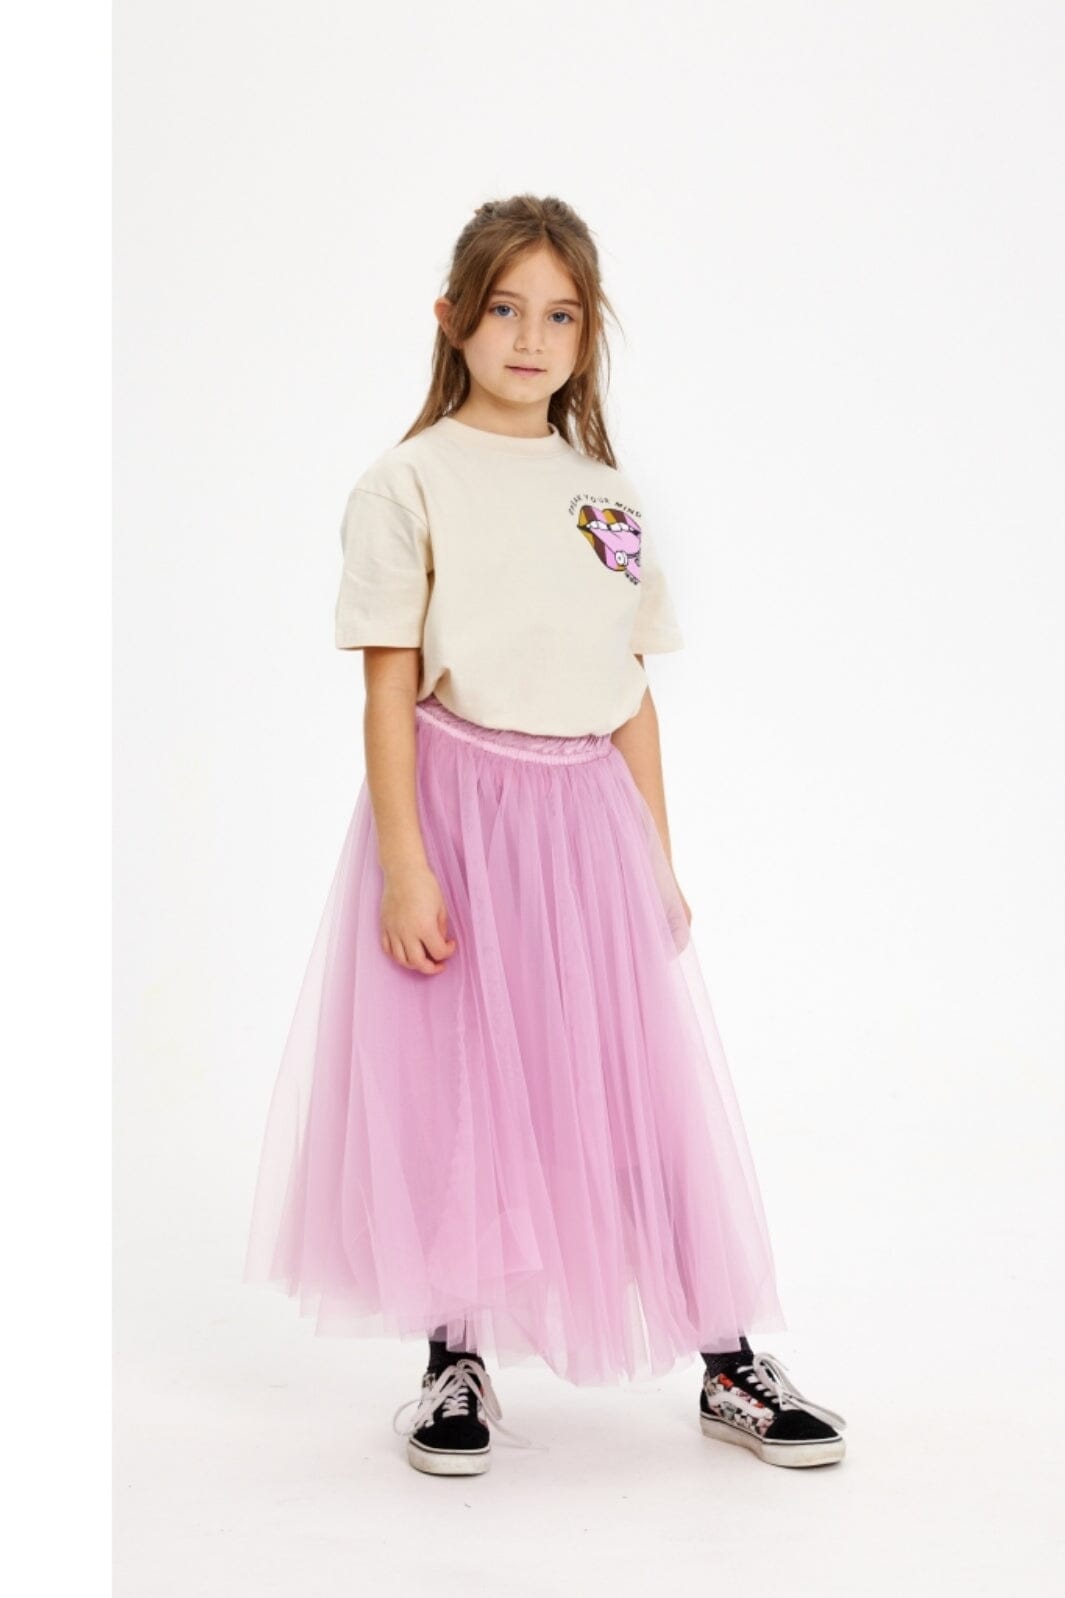 The New - Tnheaven Skirt - Pastel Lavender 